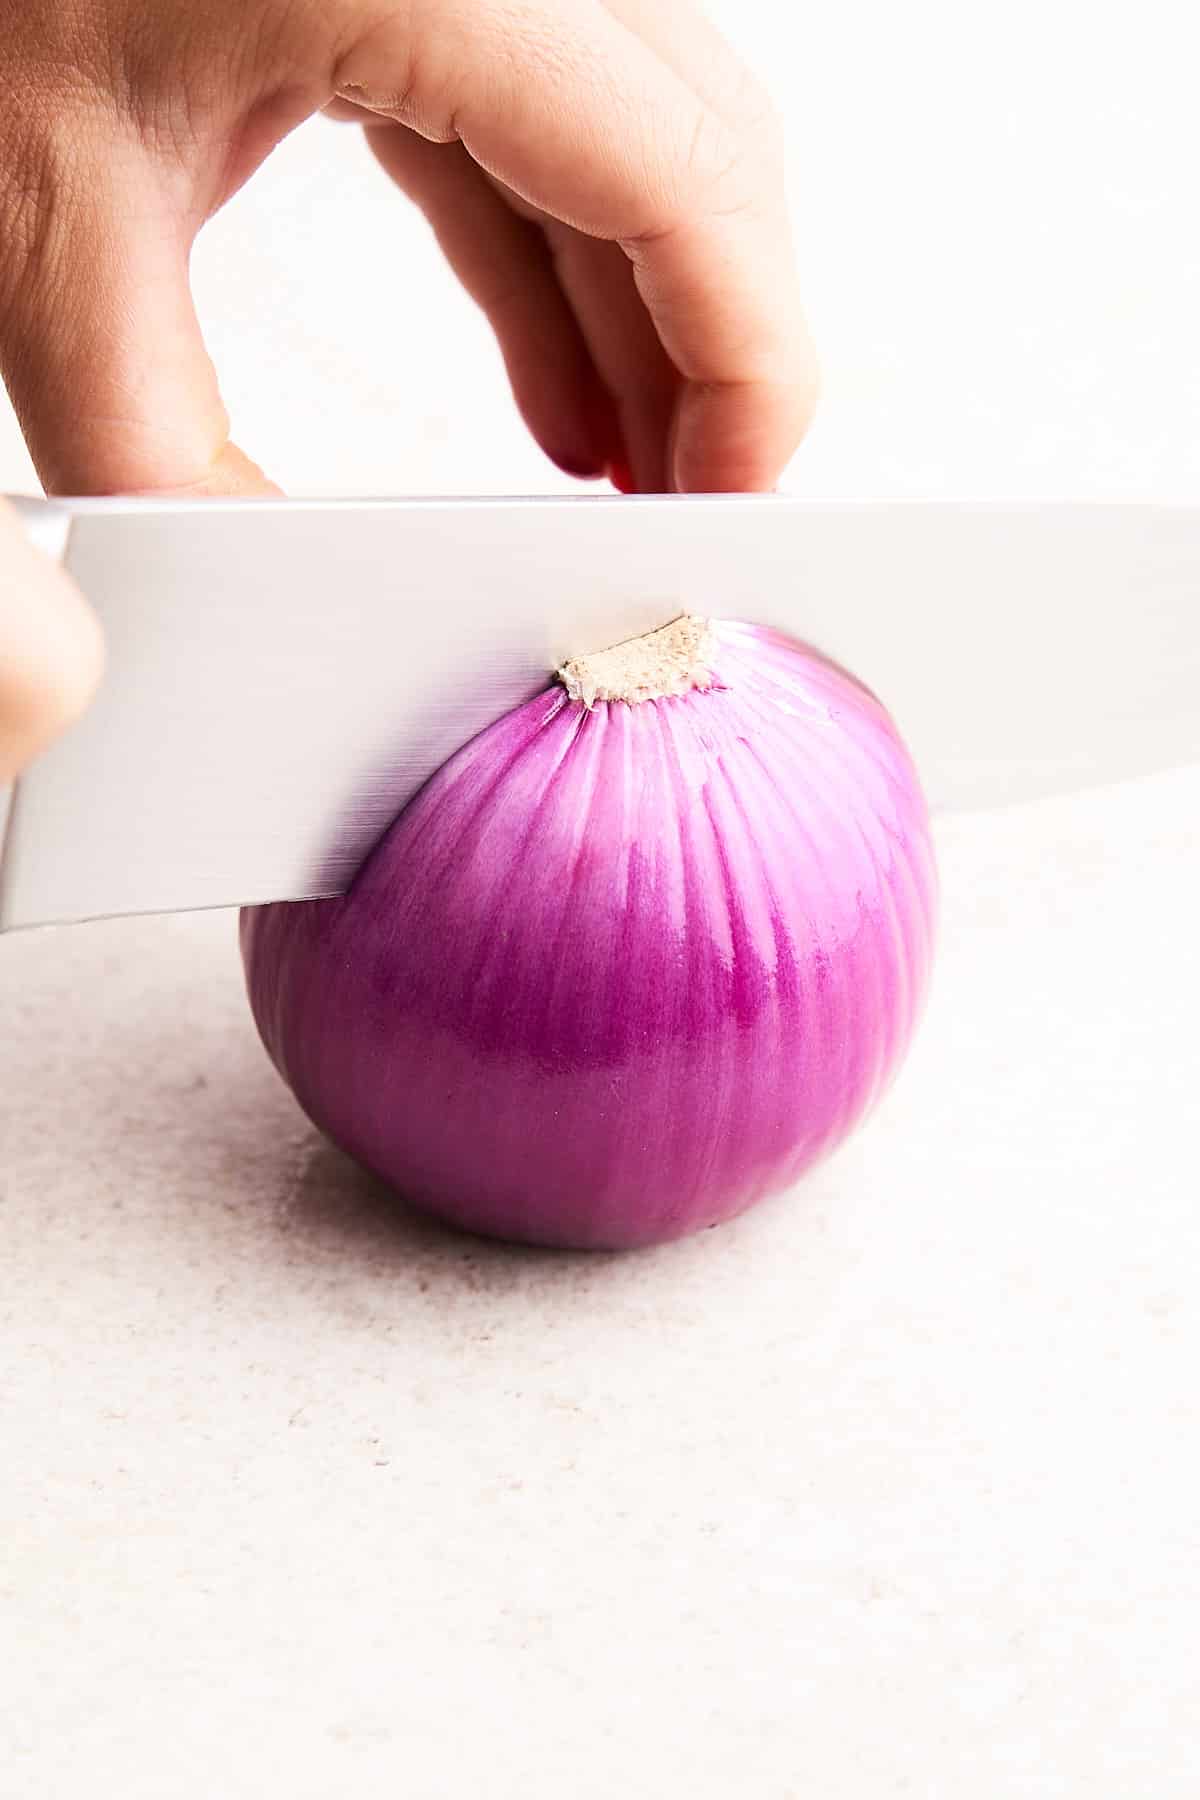 Cutting an onion in half.